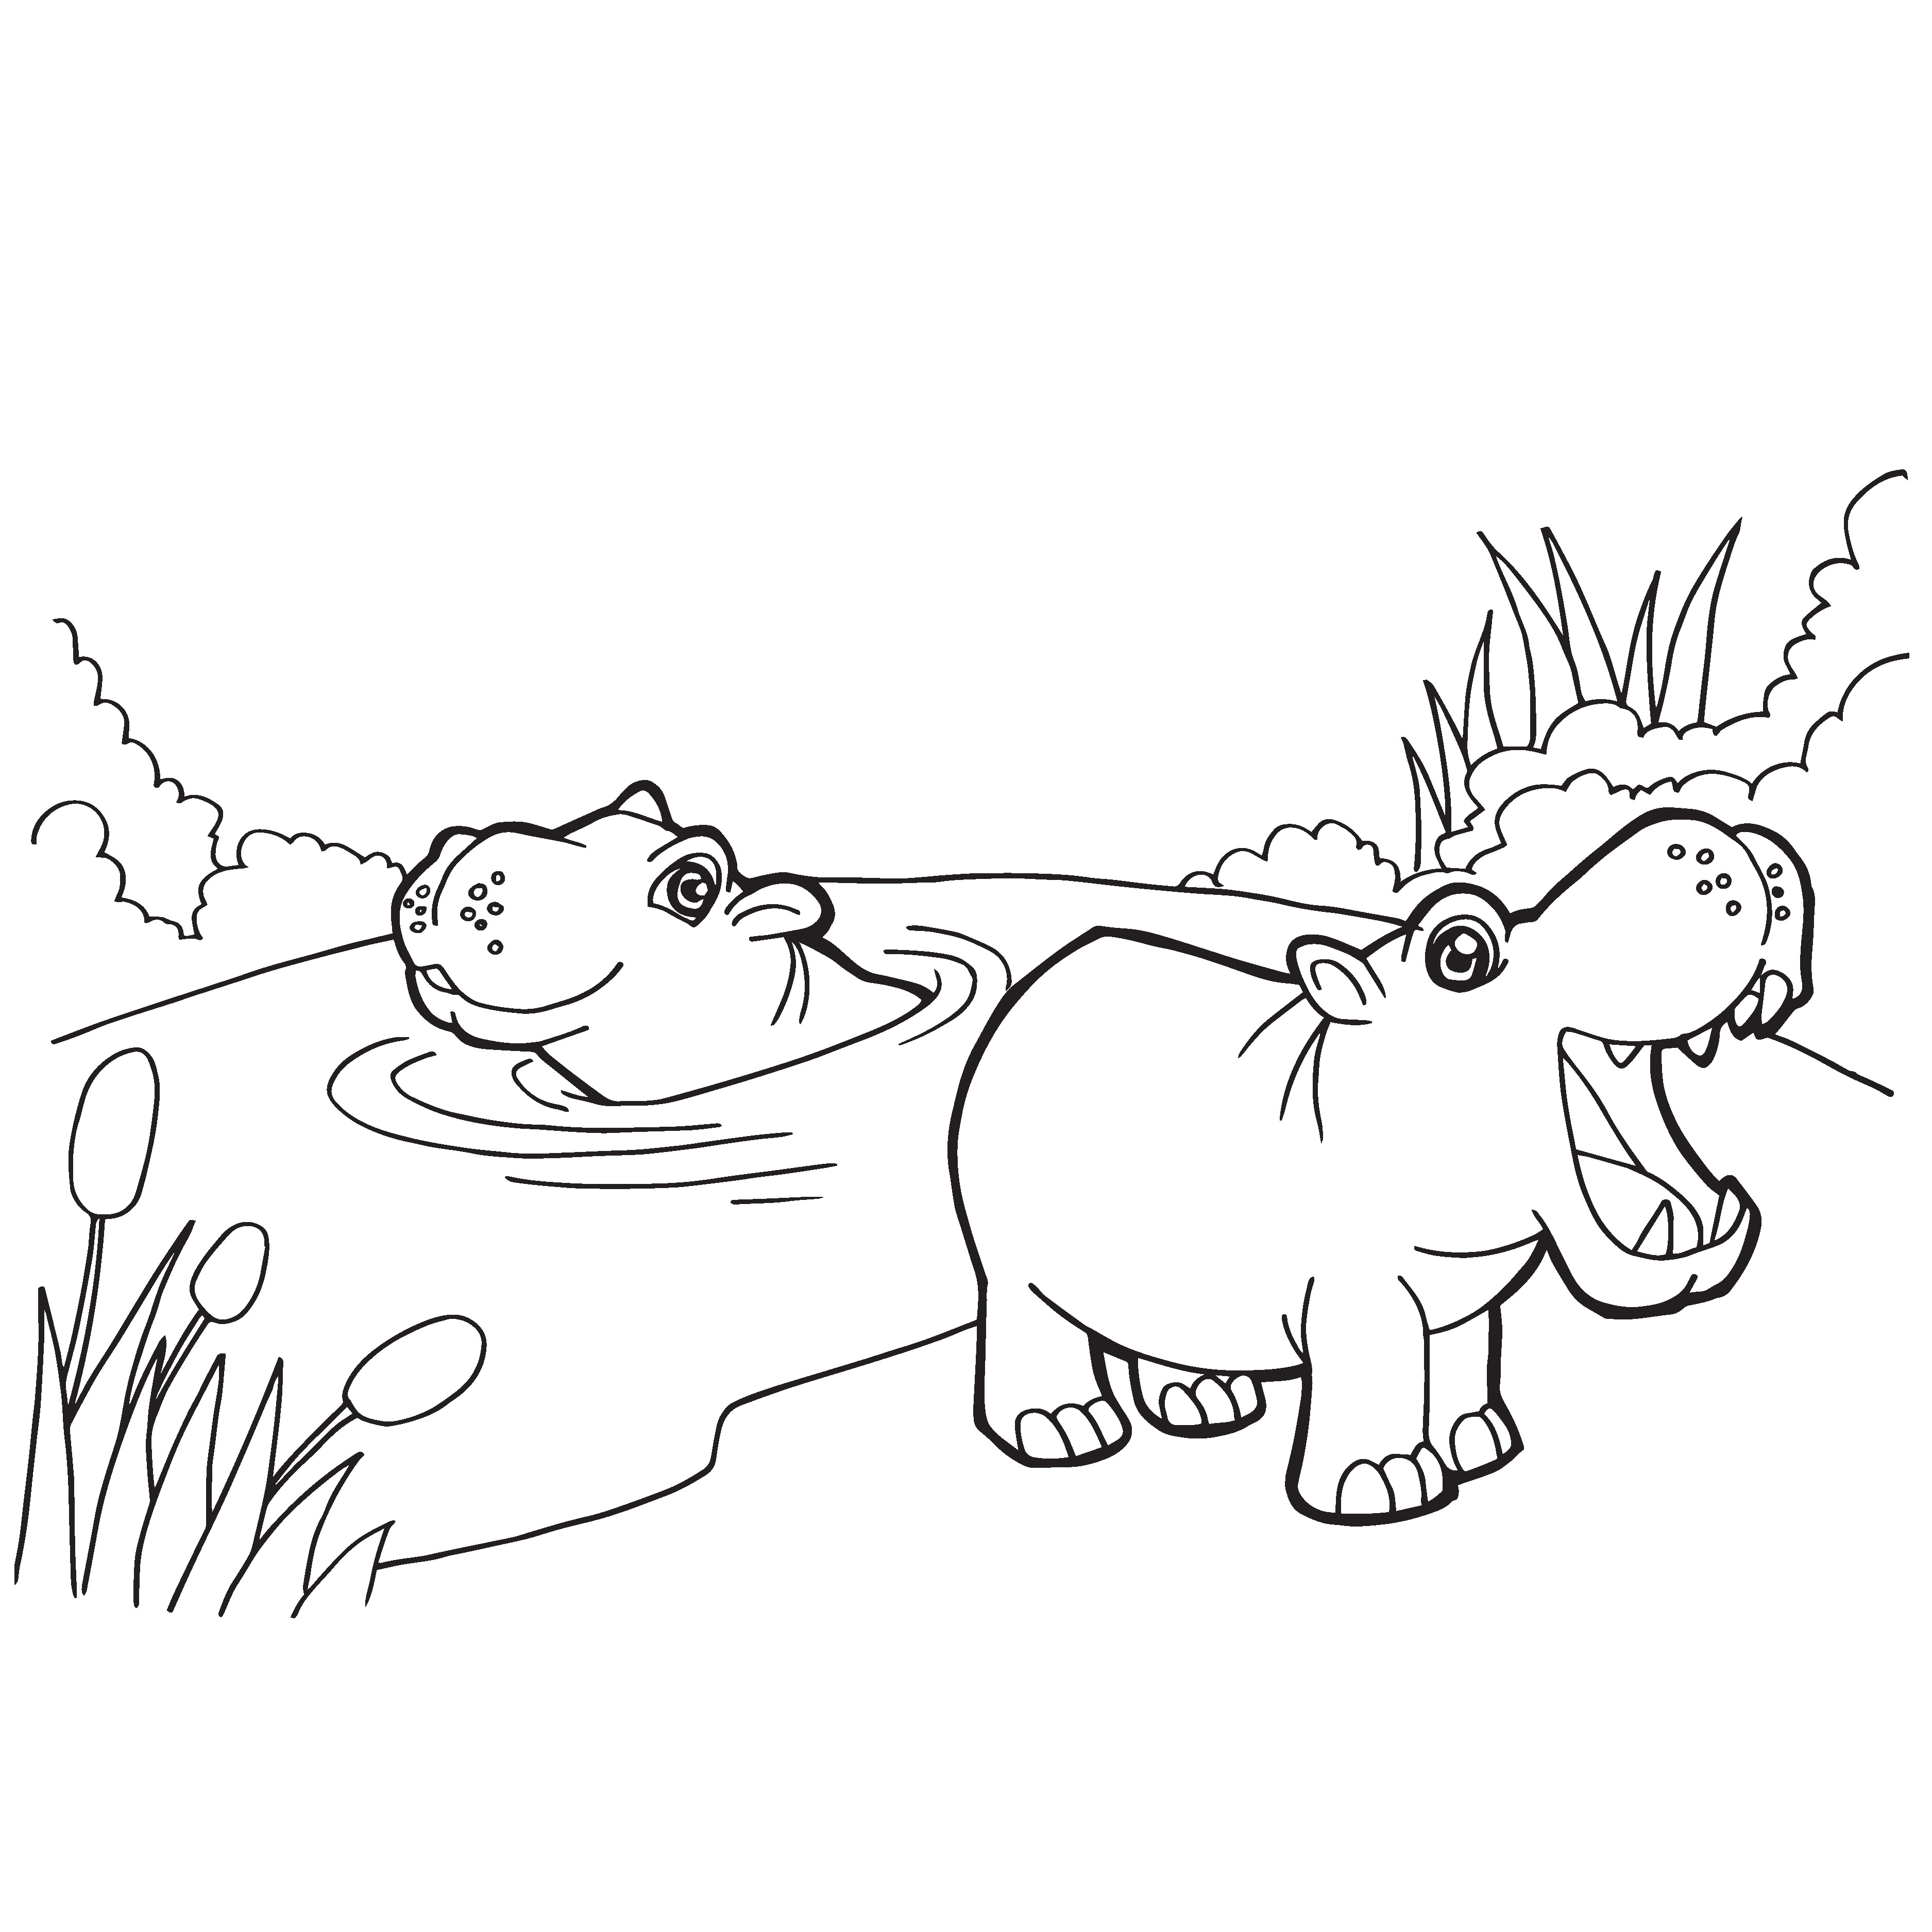 colouring-pages-of-hippopotamus-leblogduvielaudon